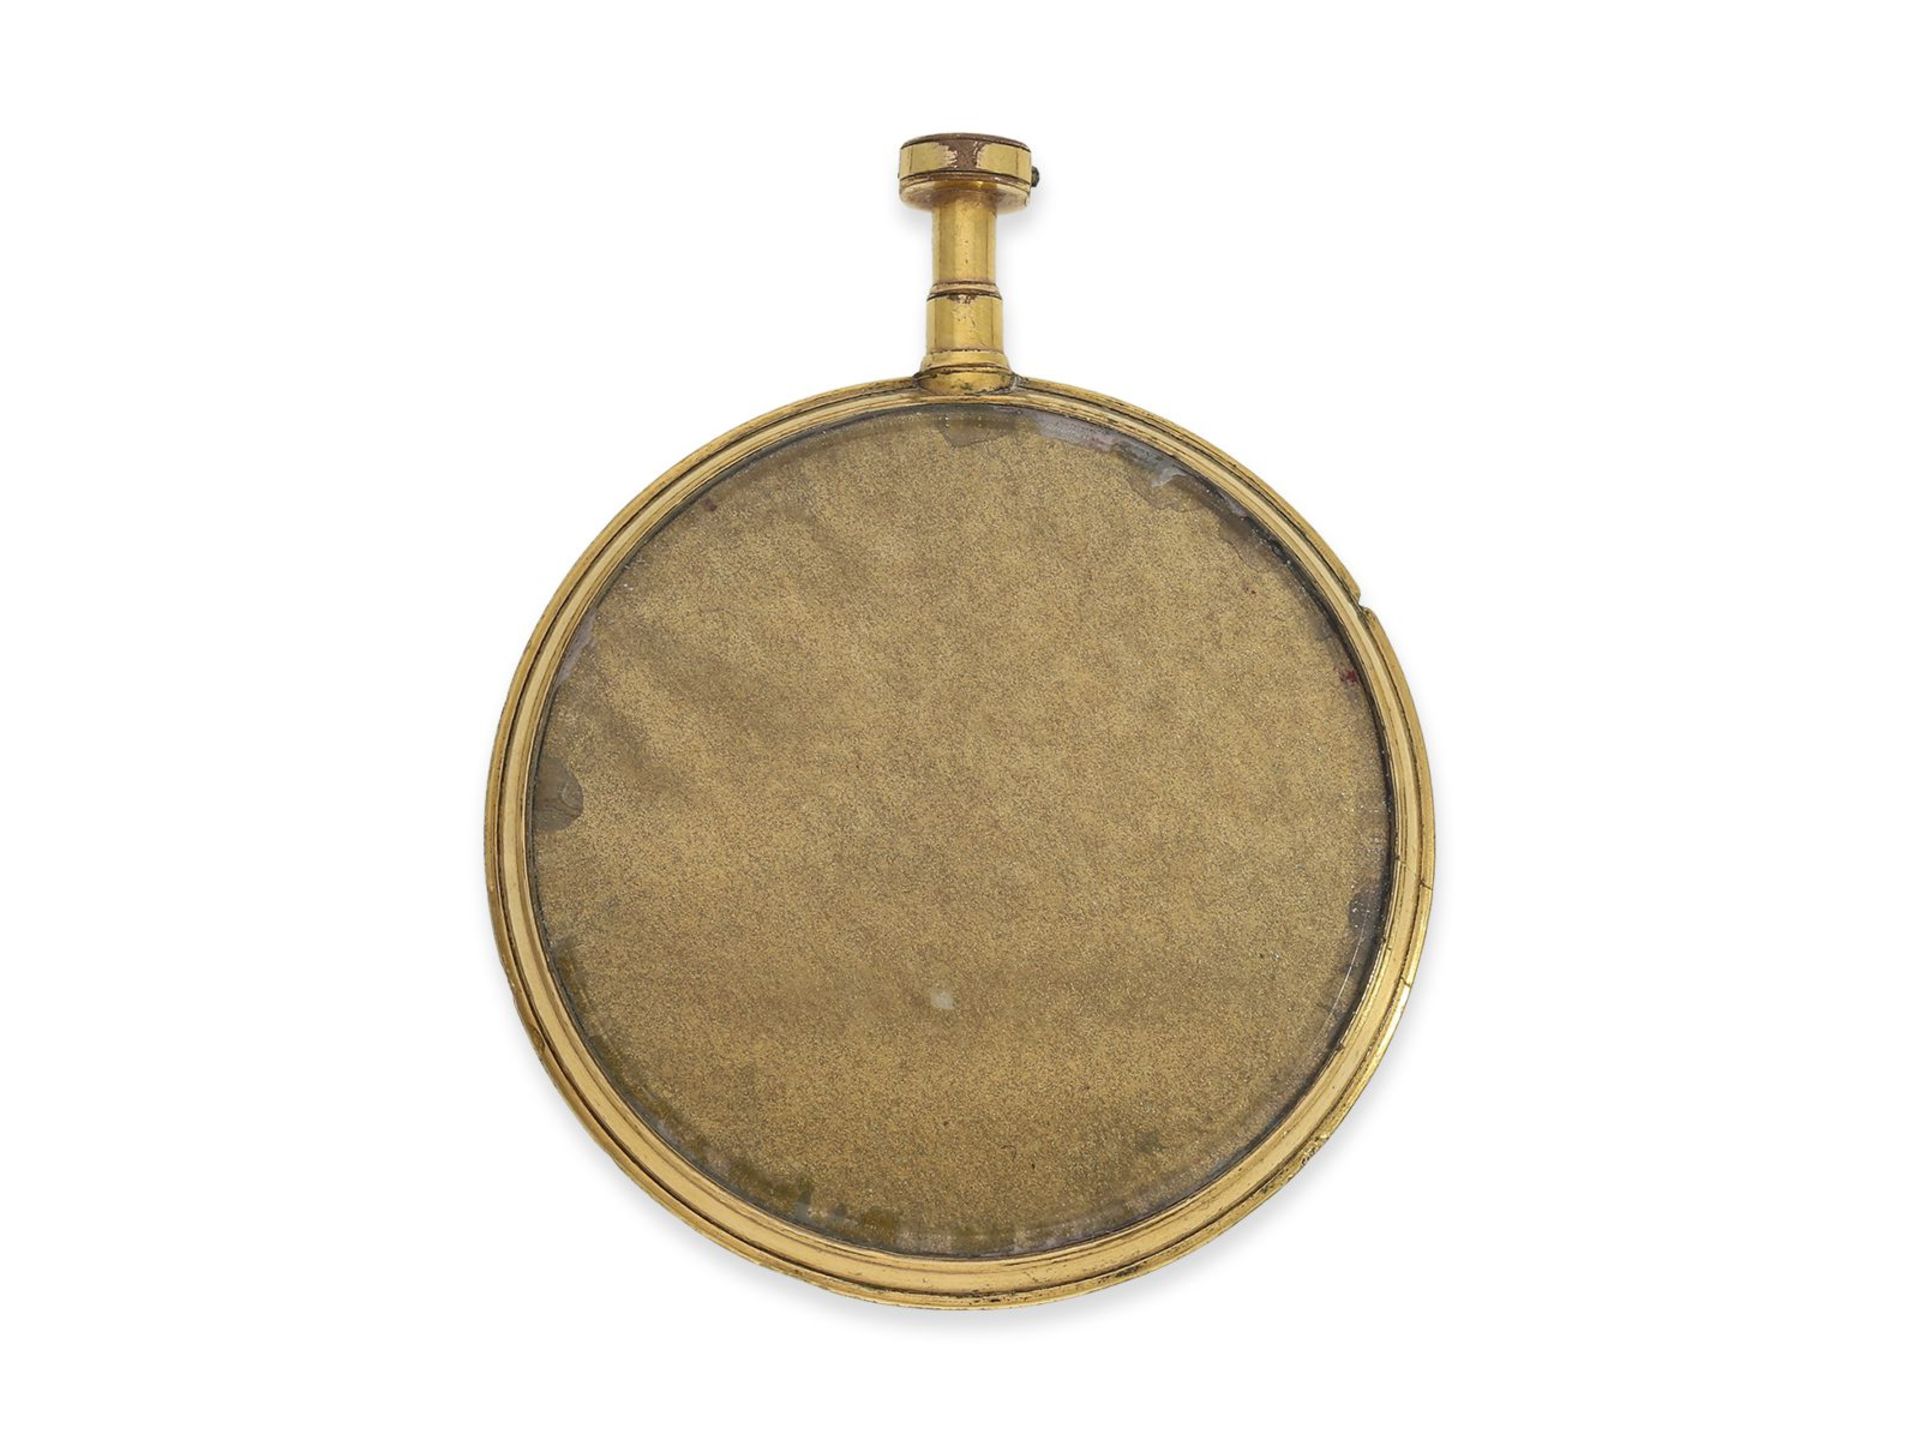 Taschenuhr: sehr seltene Taschen-Sonnenuhr mit Kompass, sog. "Sun-Dial", vermutlich um 1780, Ca. - Image 2 of 2